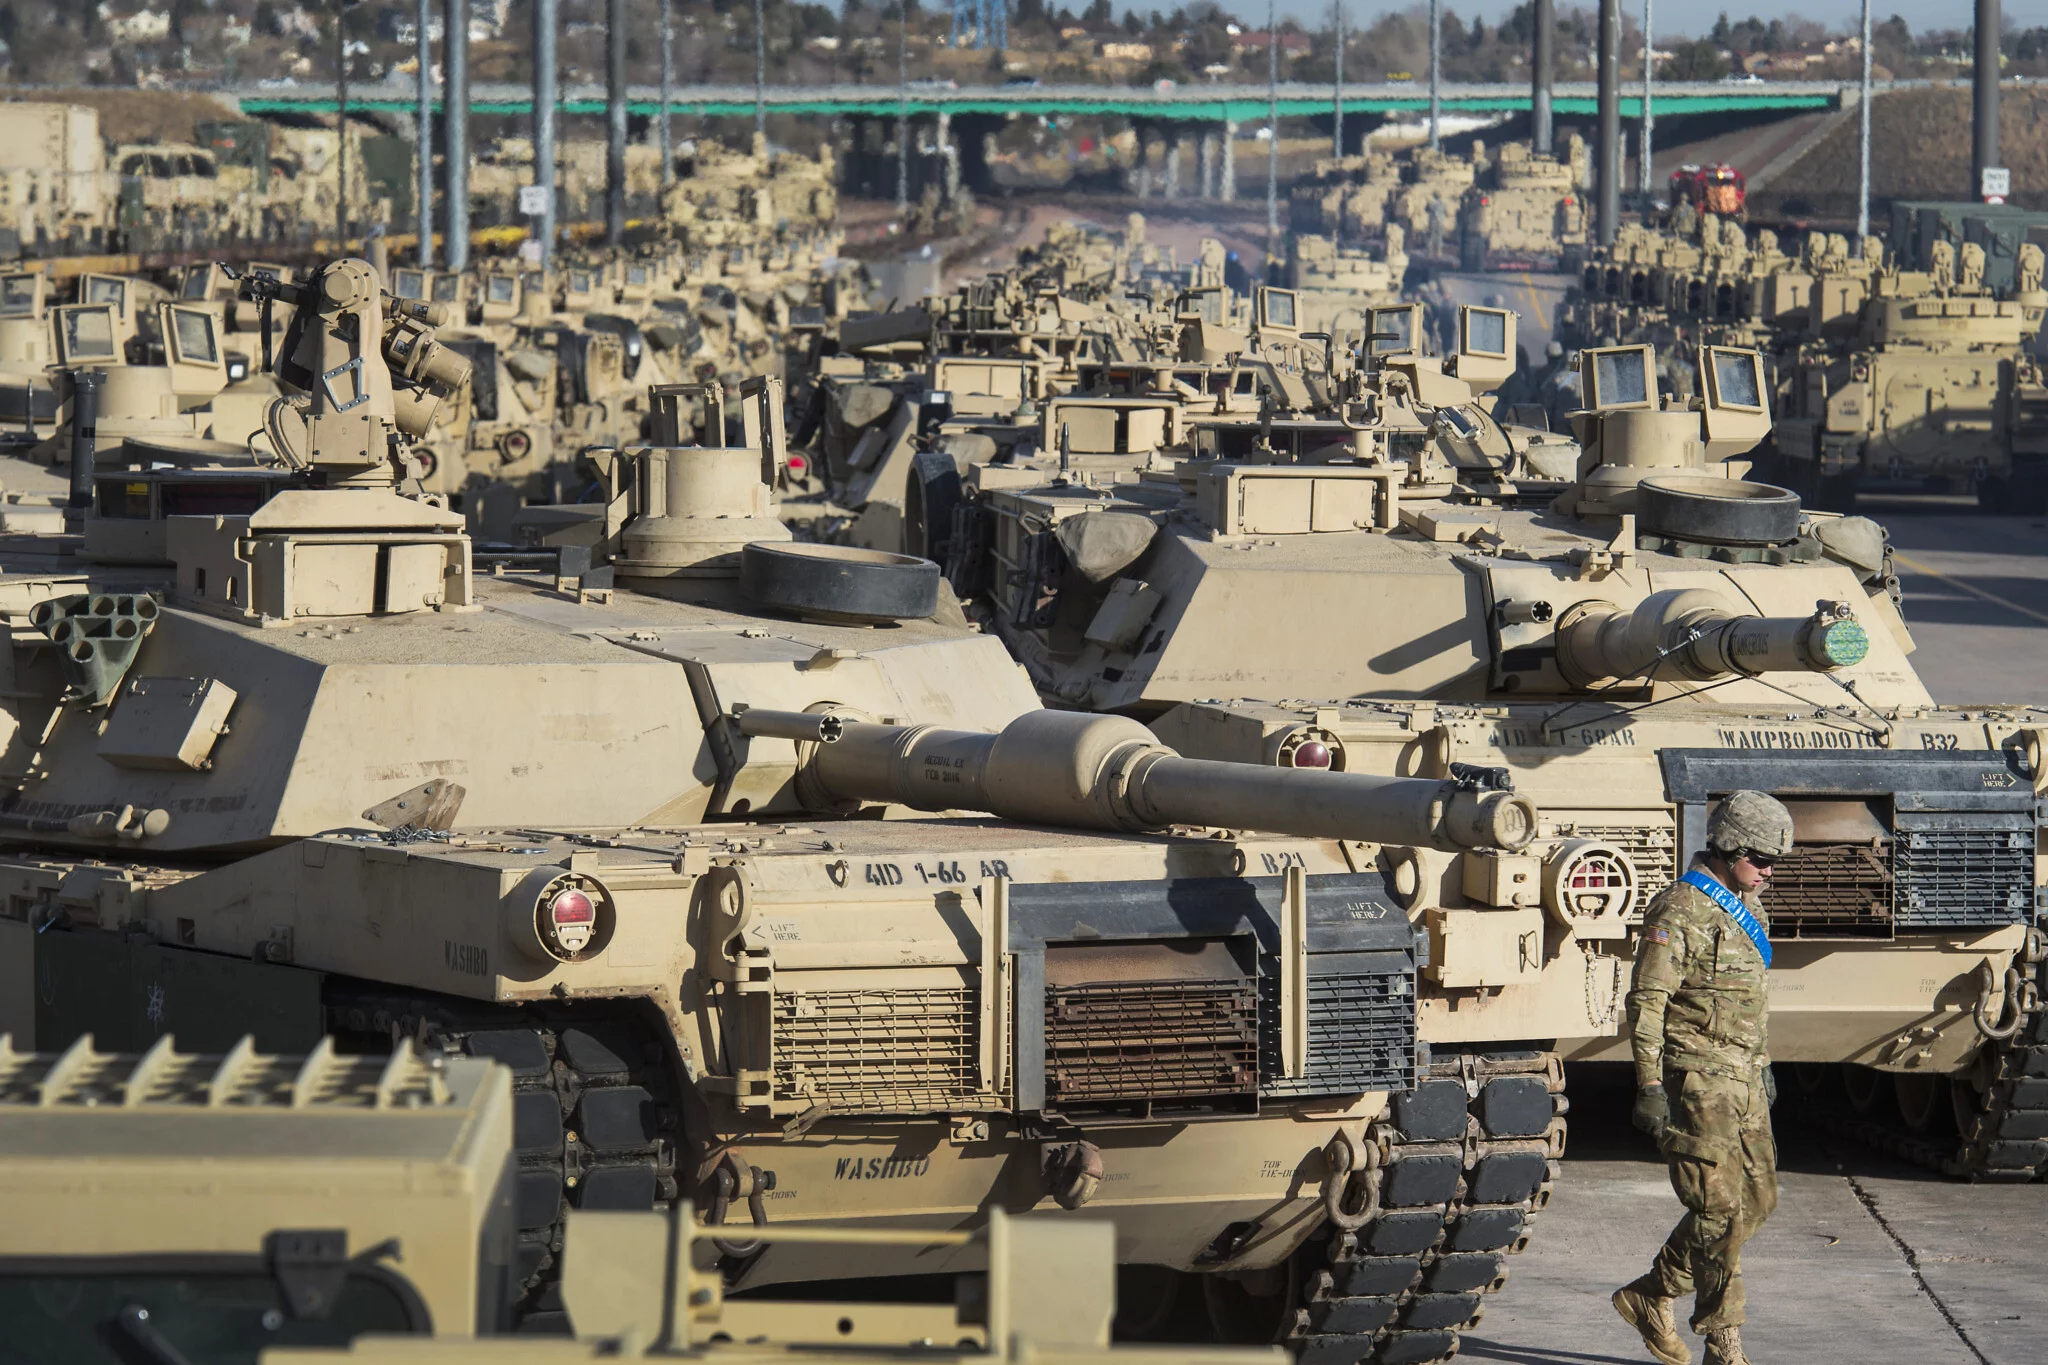 EE. UU. aprueba venta de tanques a Bahréin por $2.200 millones